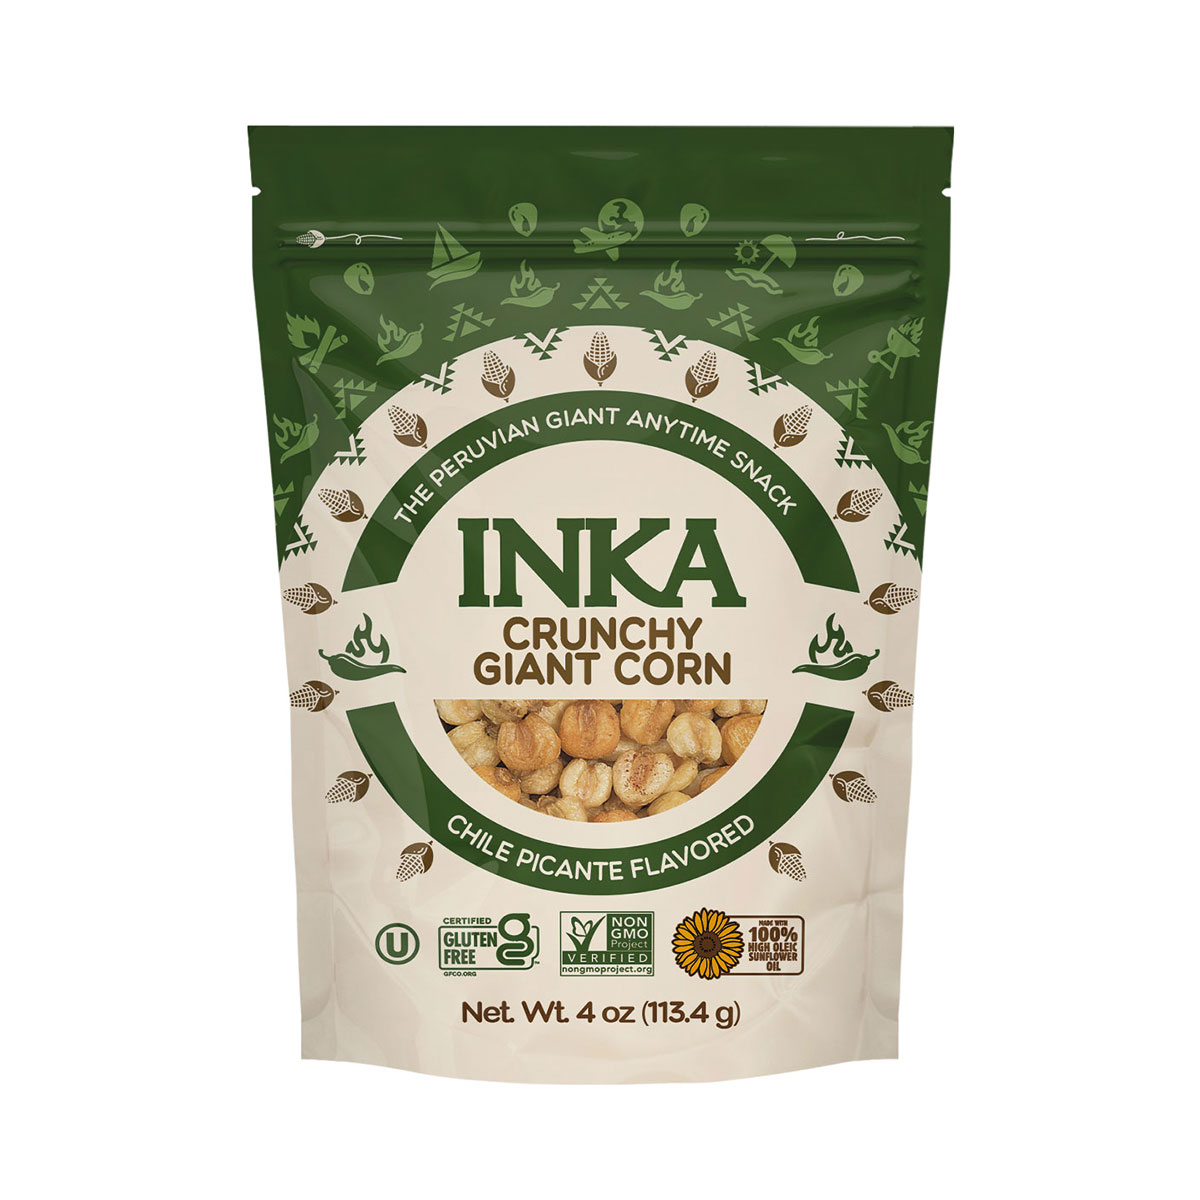 INKA Crops Giant Corn, Chile Picante 36 units per case 4.0 oz